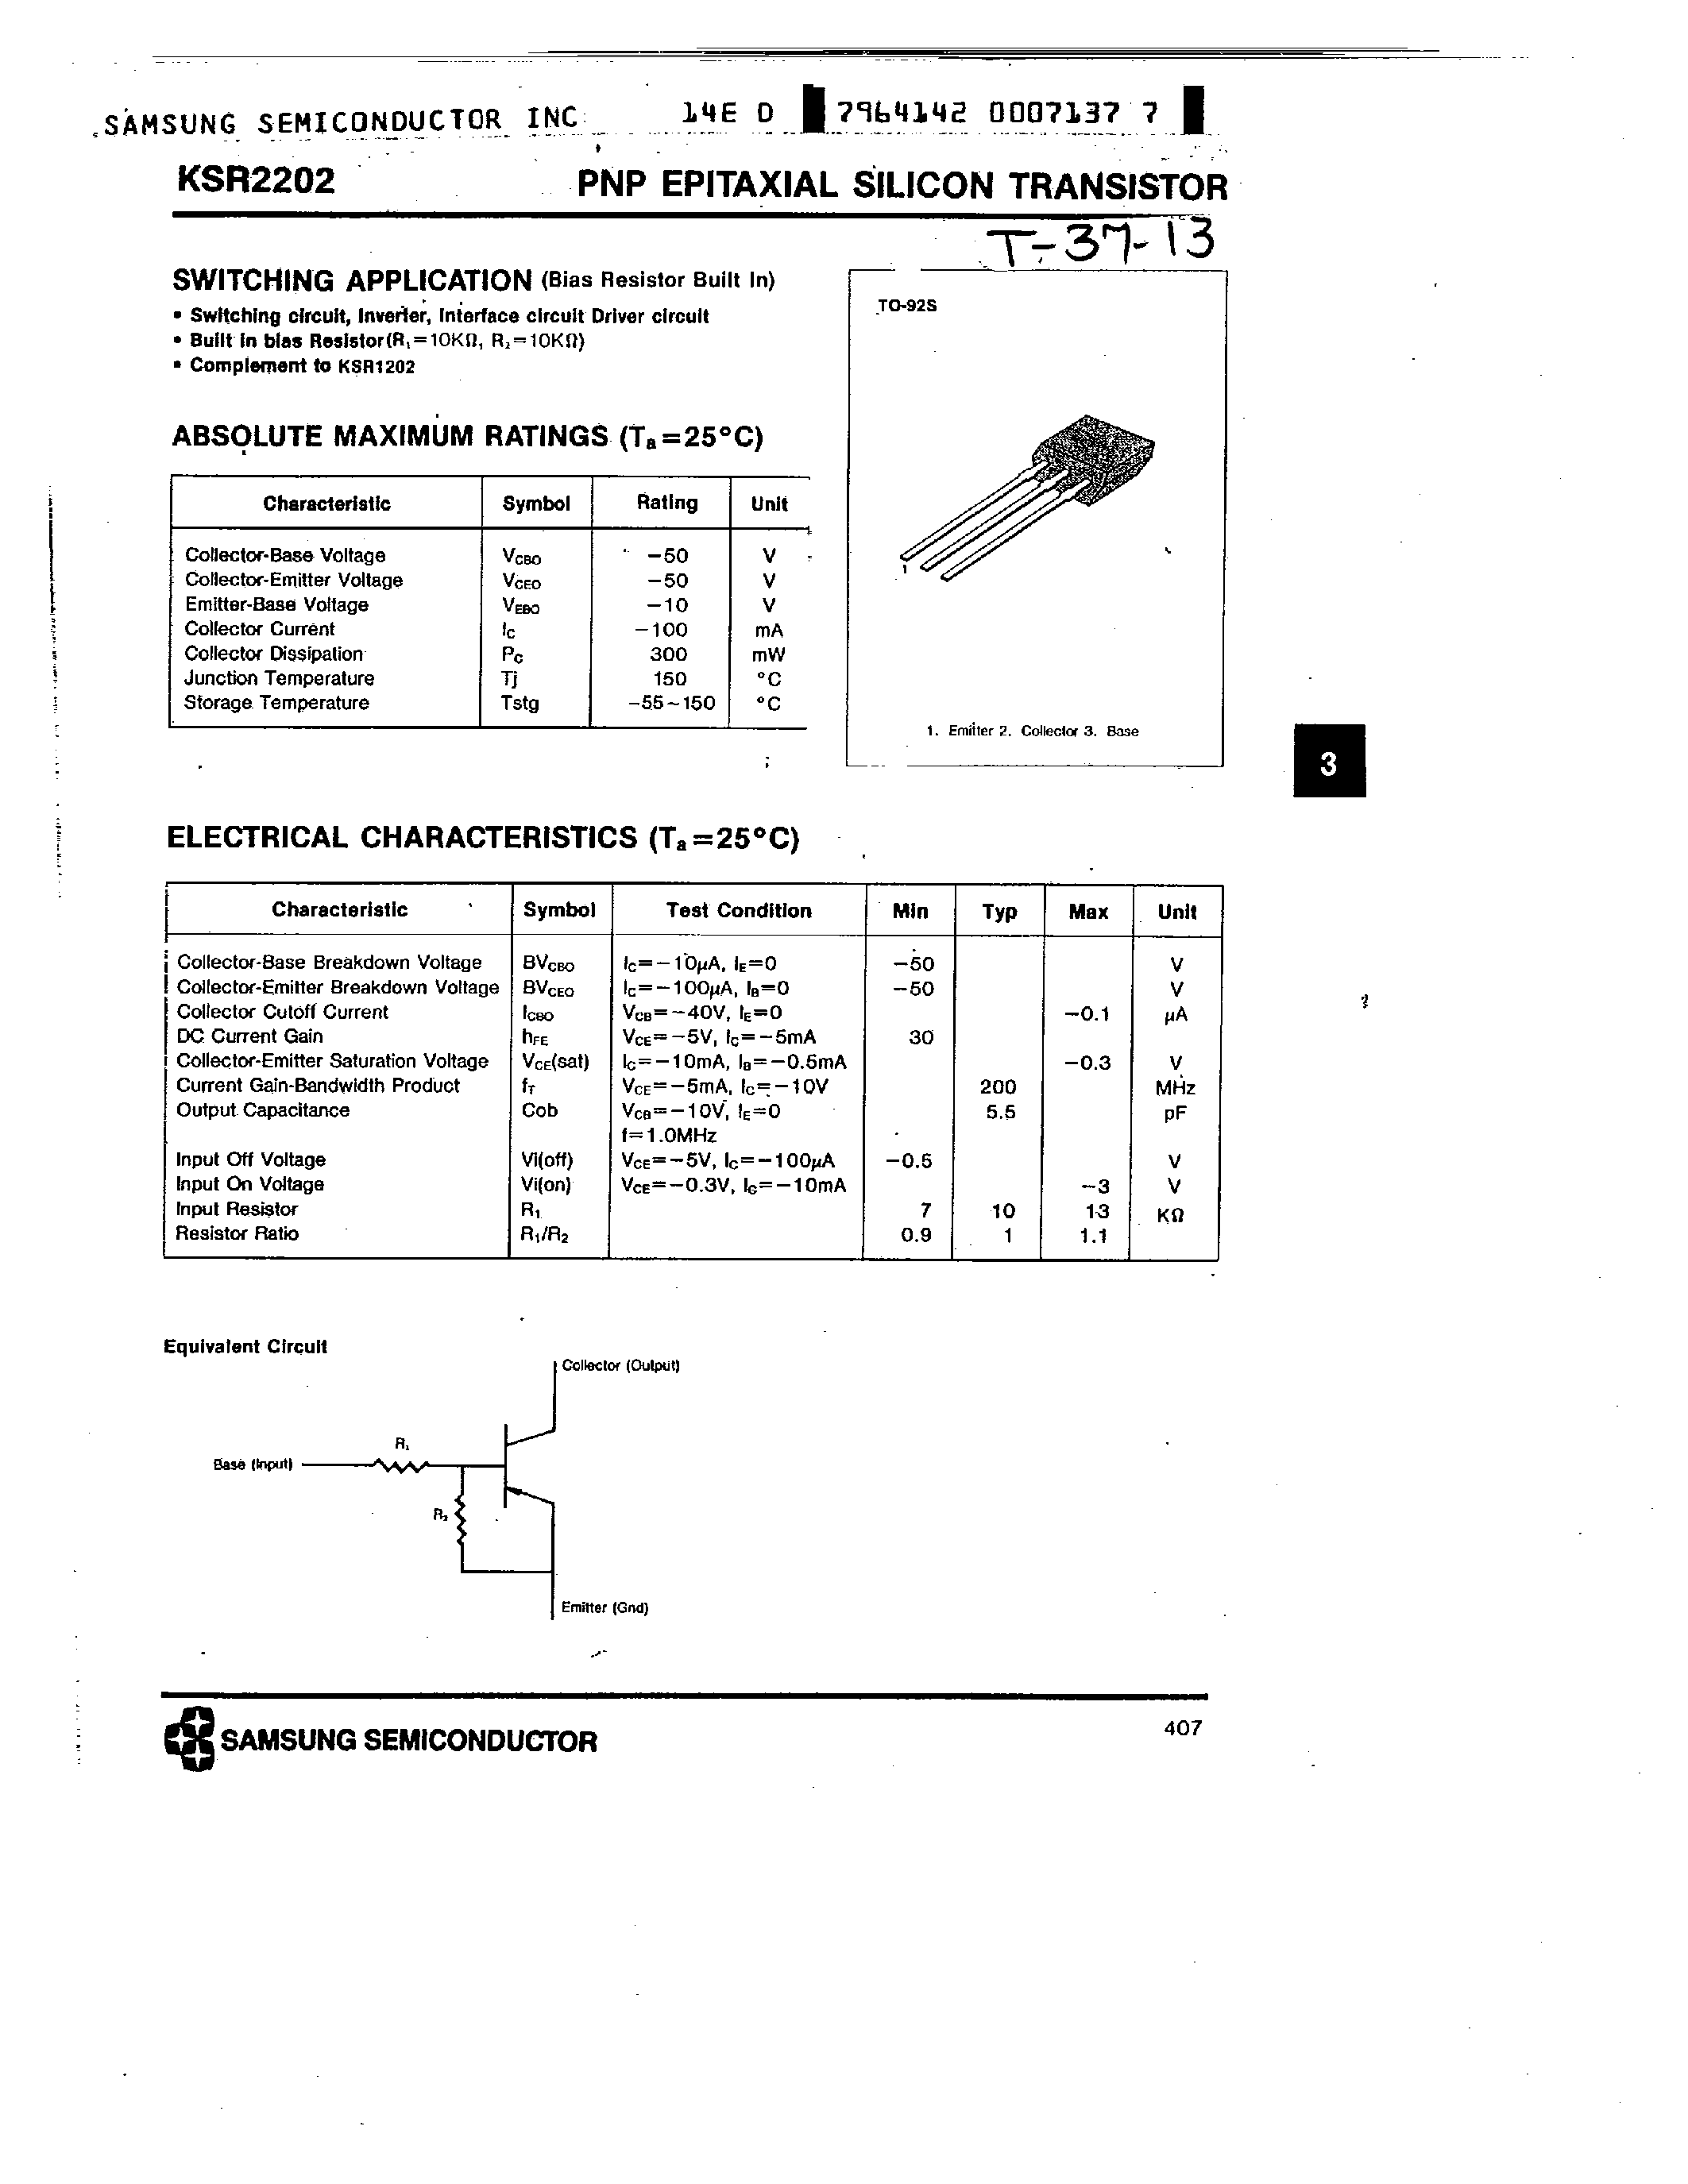 Datasheet KSR2202 - PNP (SWITCHING APPLICATION) page 1